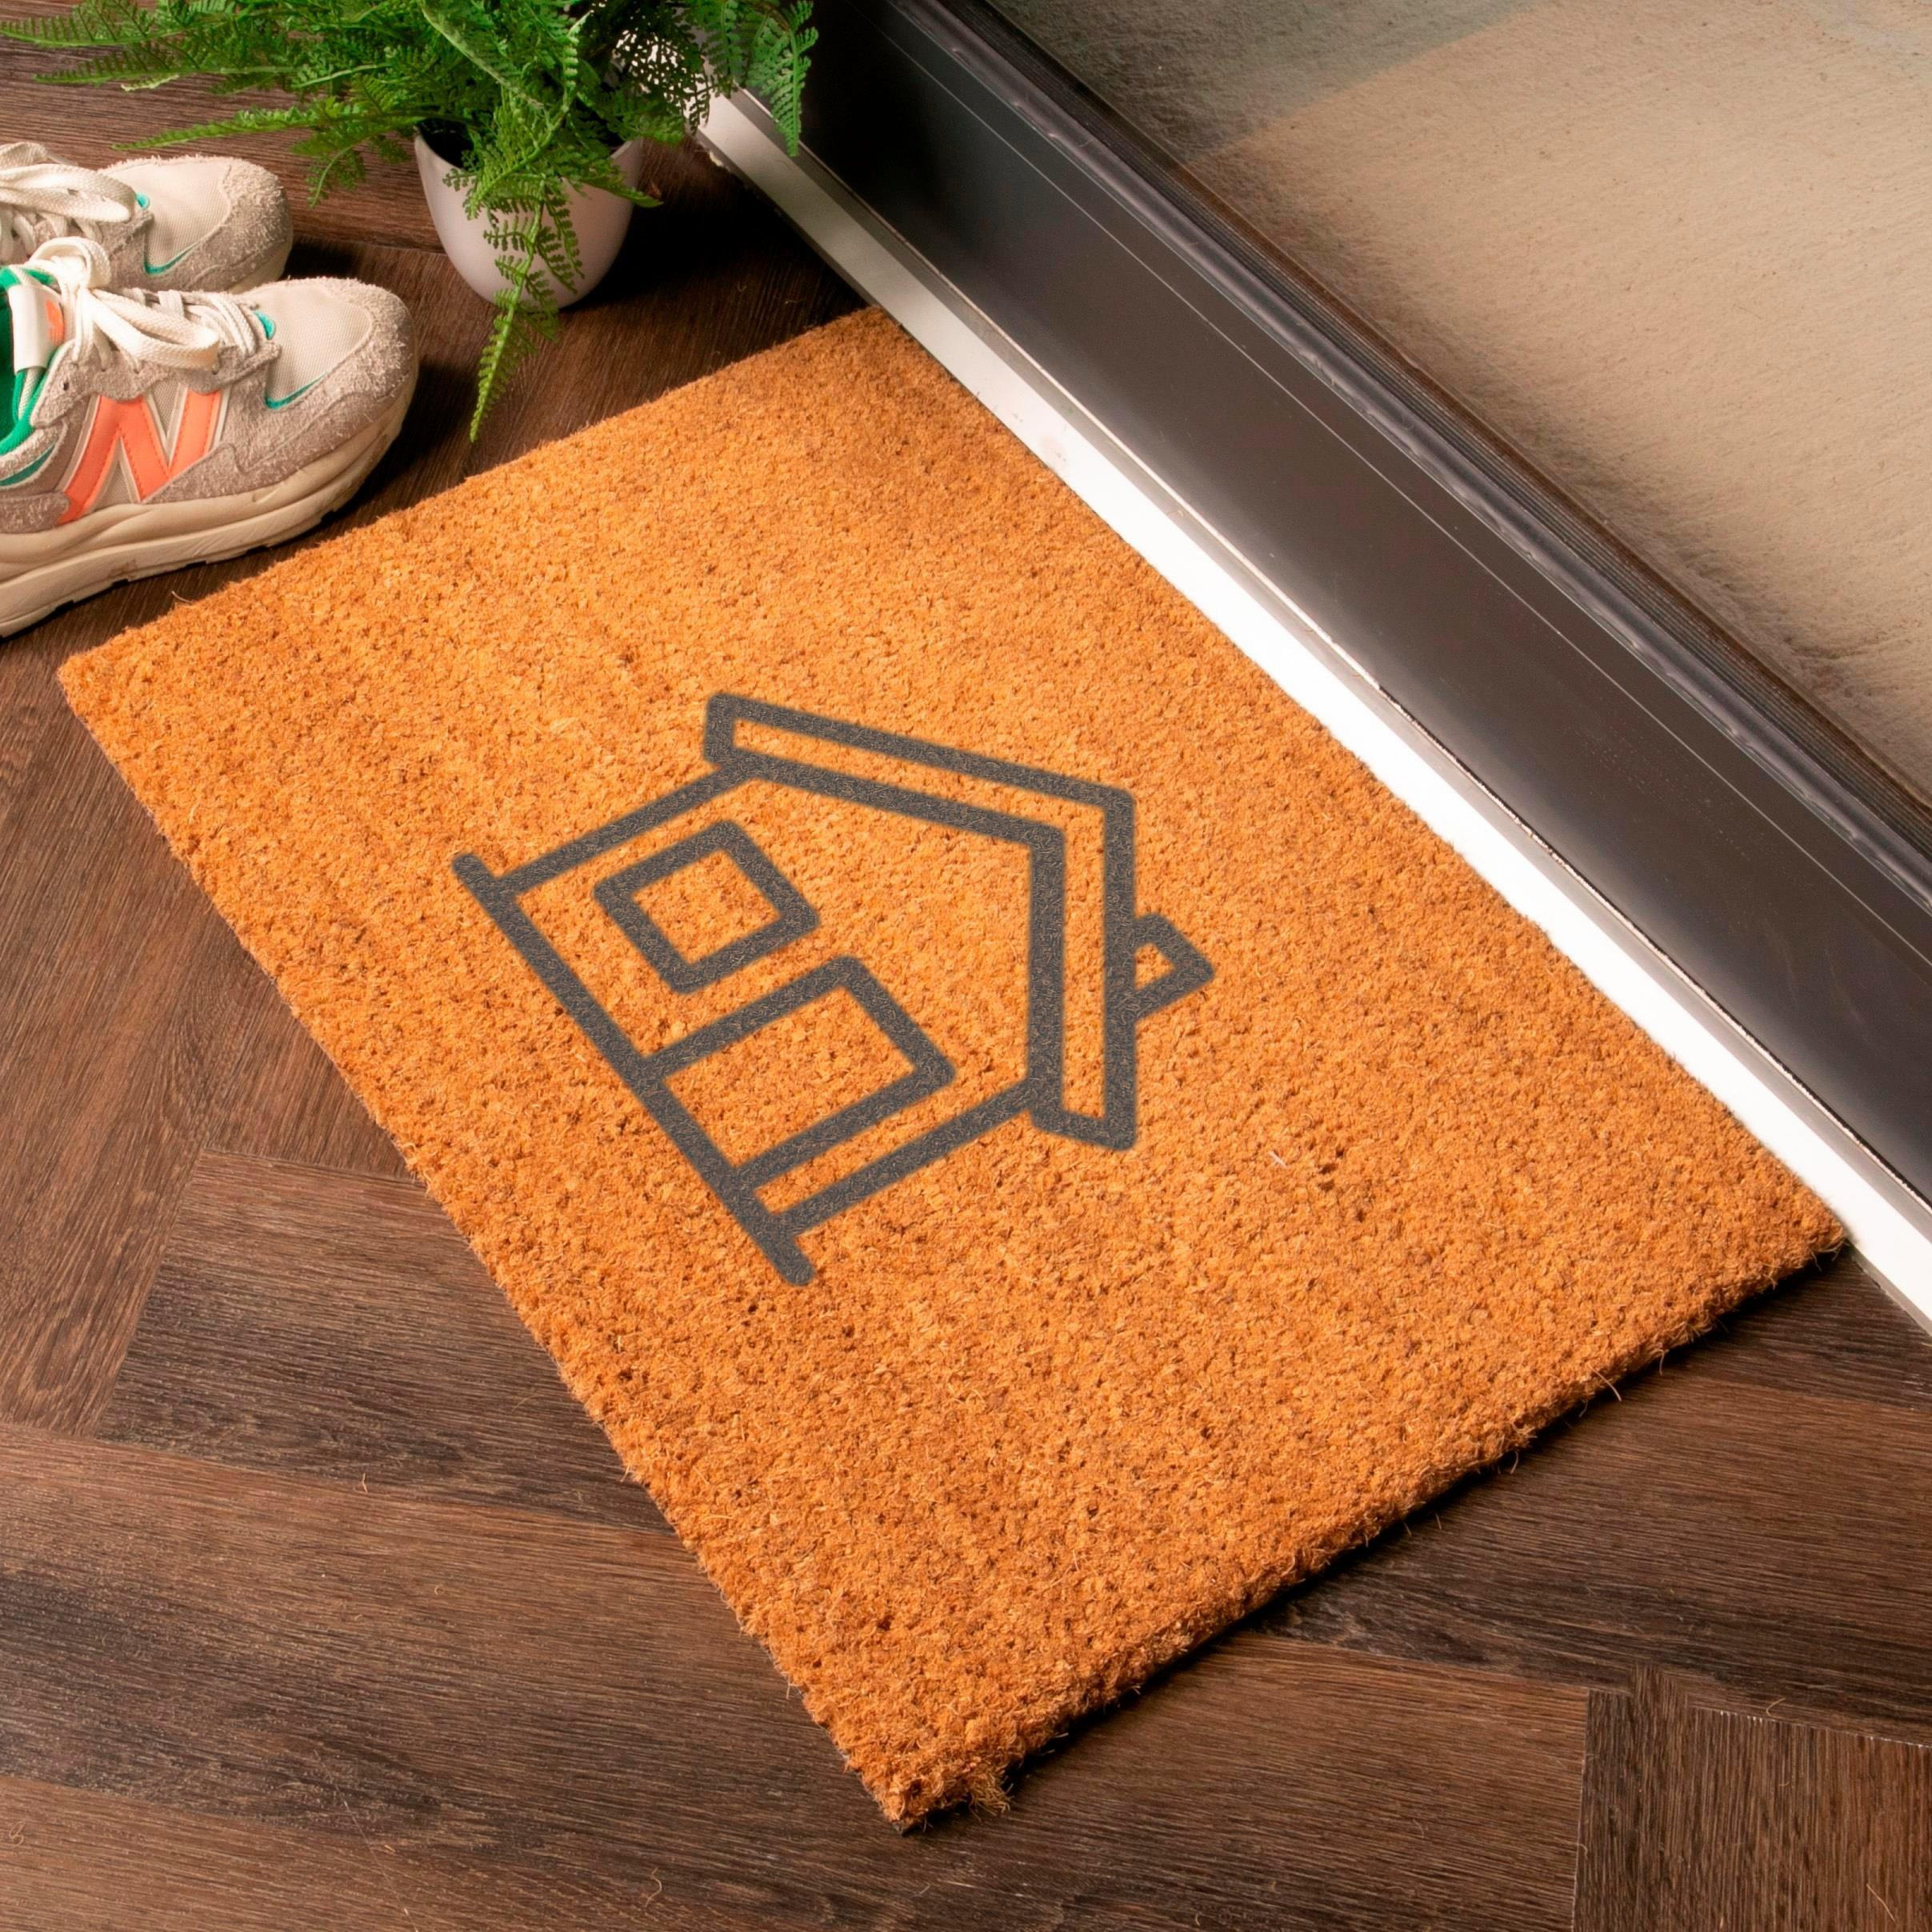 Grey Simple House Symbol Doormat - image 1